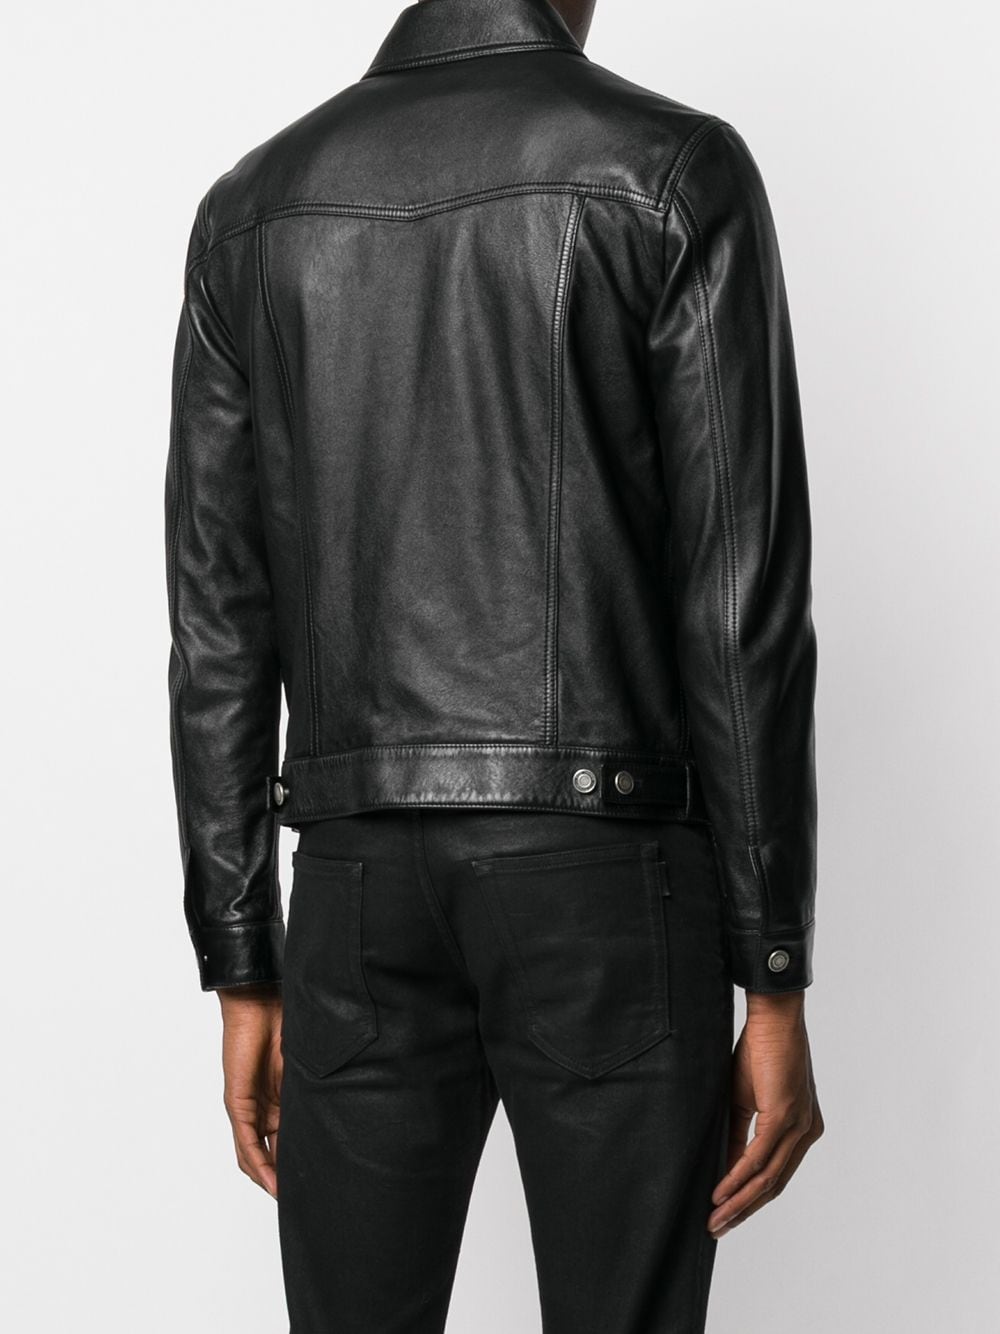 Saint Laurent button-up Leather Jacket - Farfetch